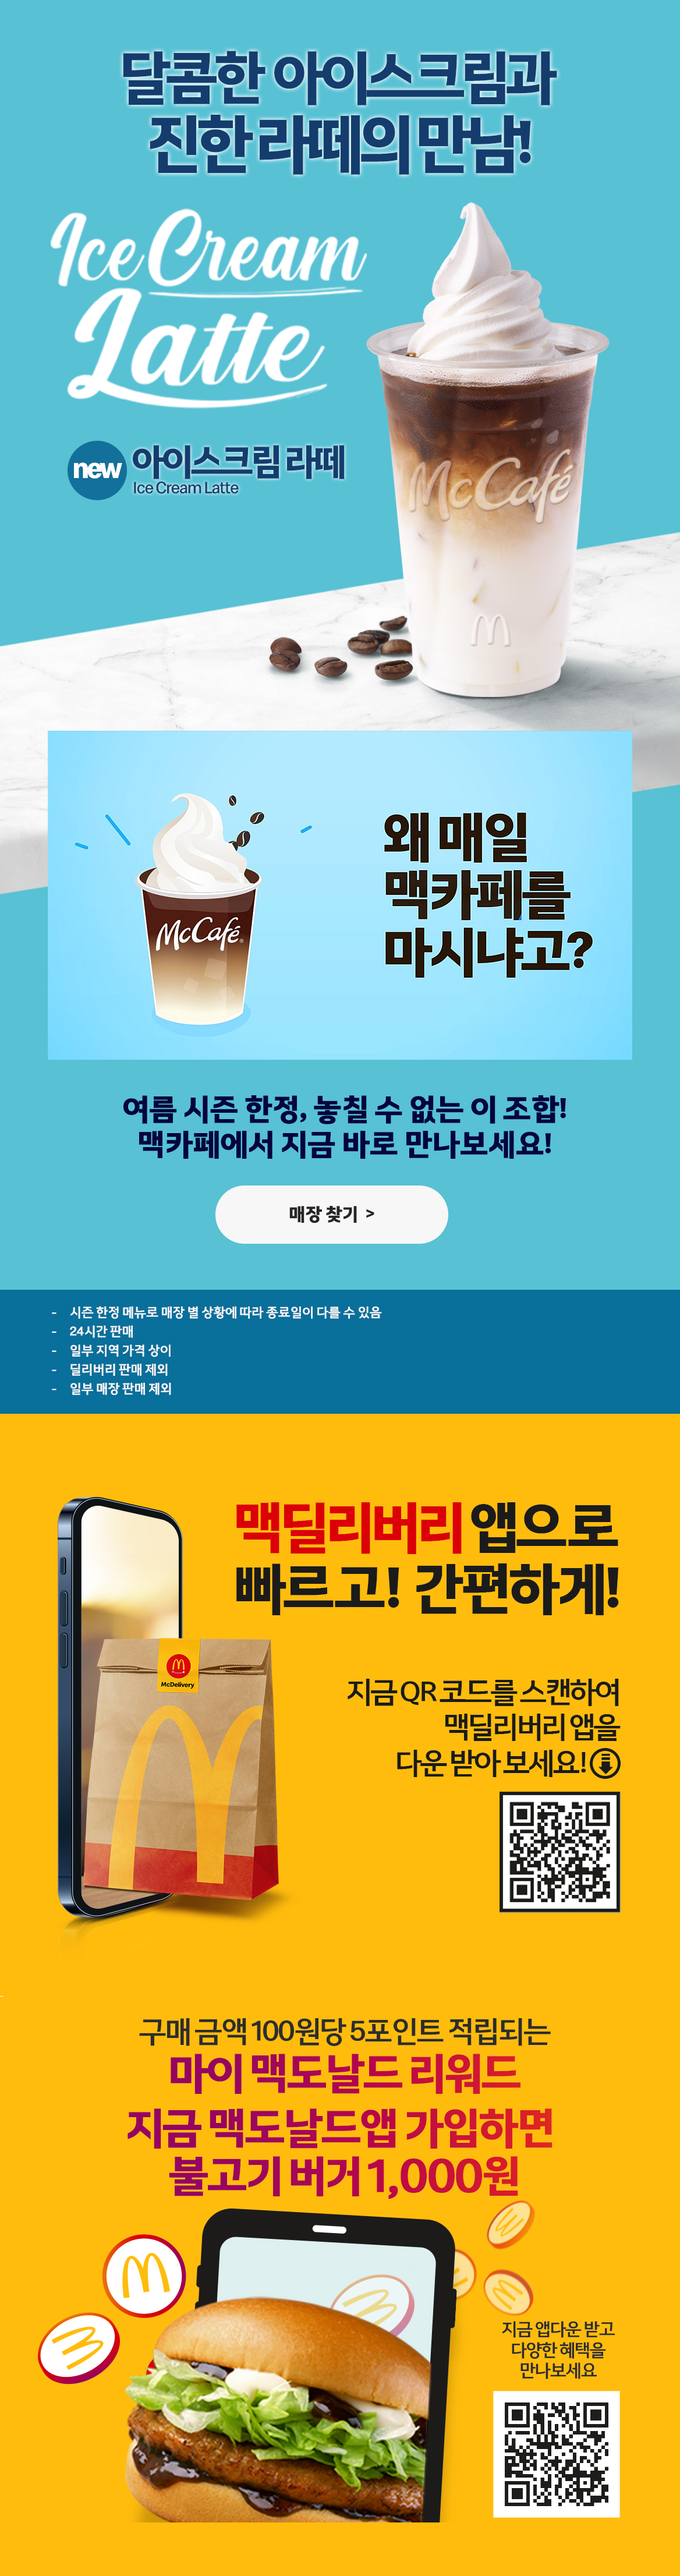 달콤한 아이스크림과 진한 라떼의 만남!